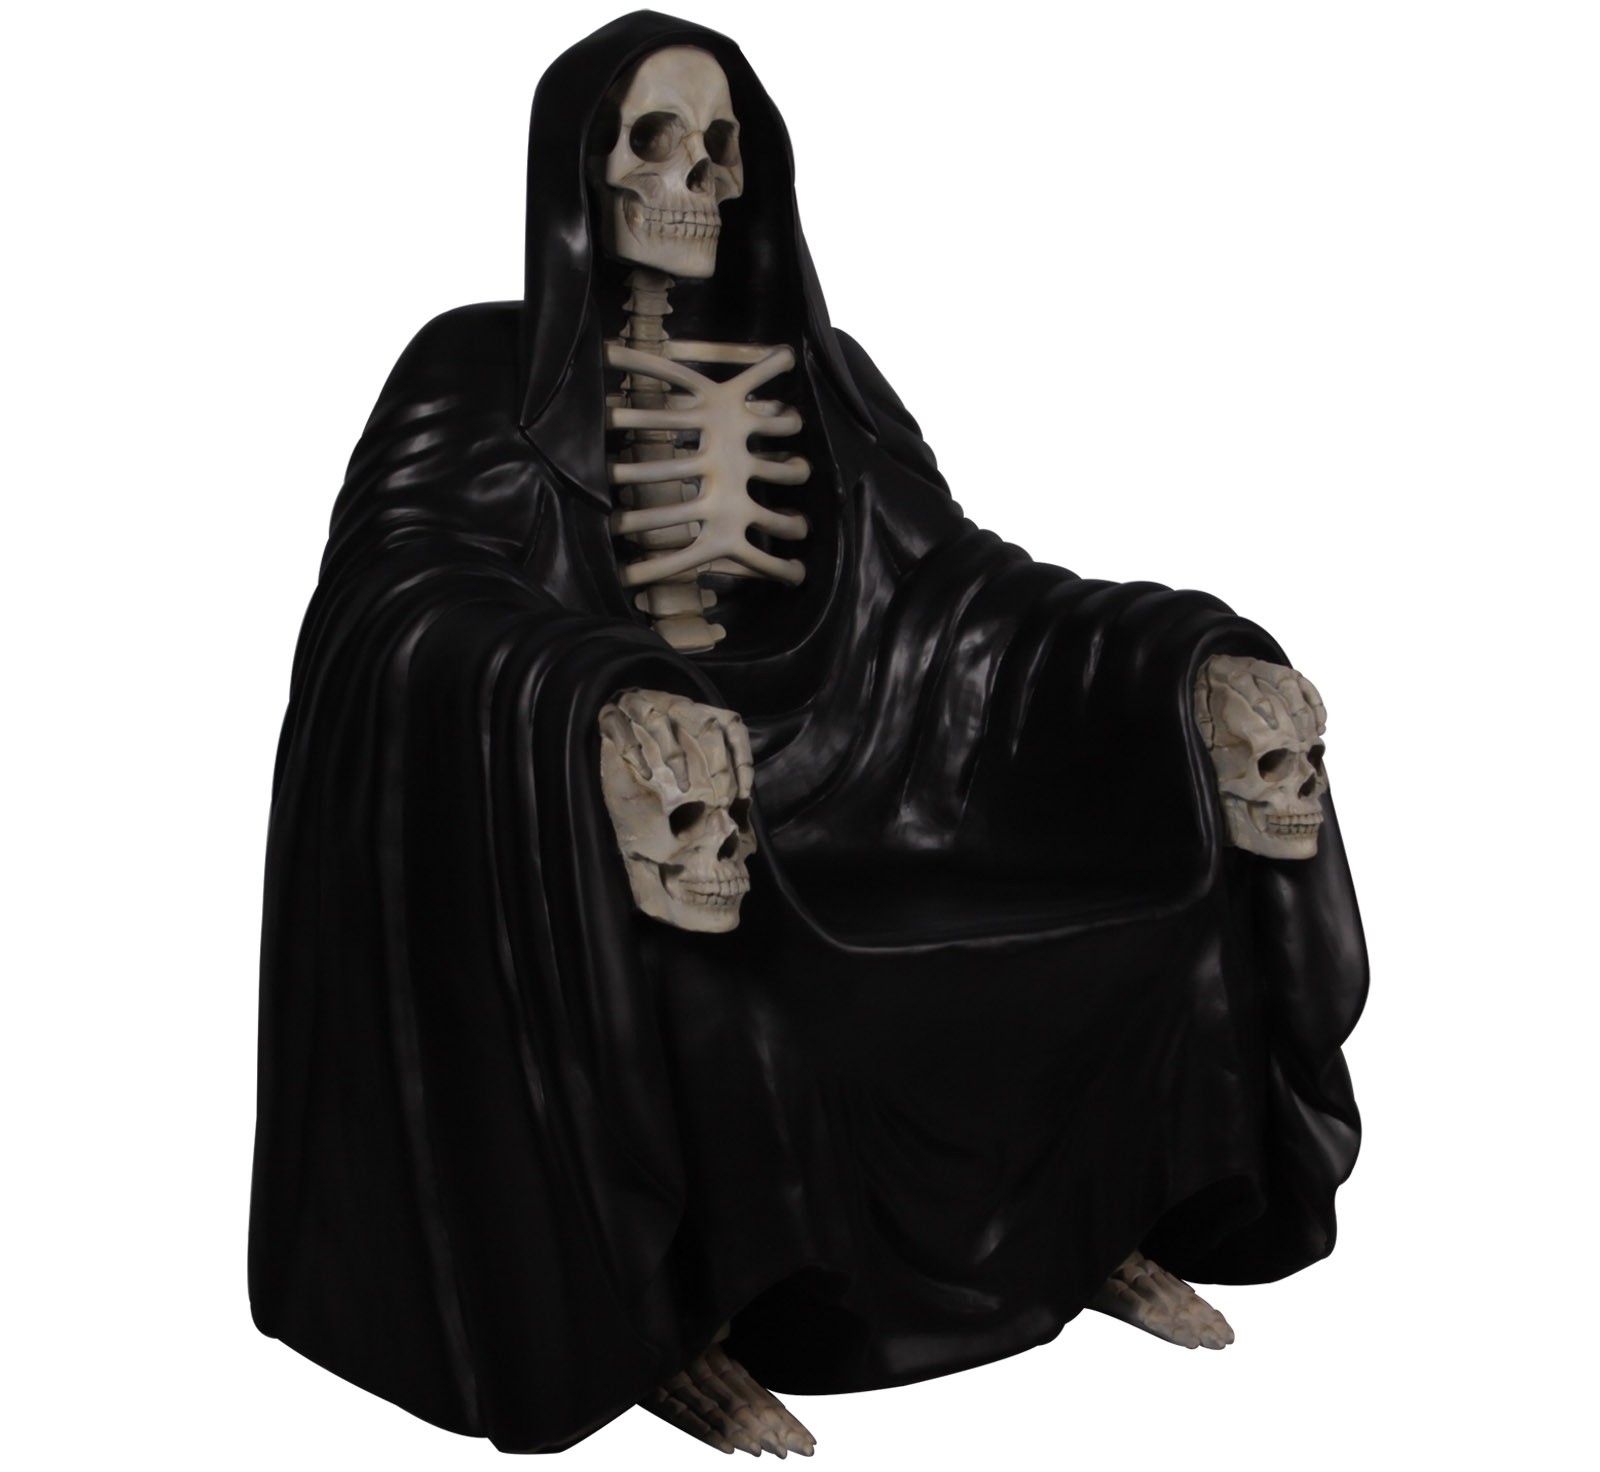 Grim Reaper Throne - 131cm